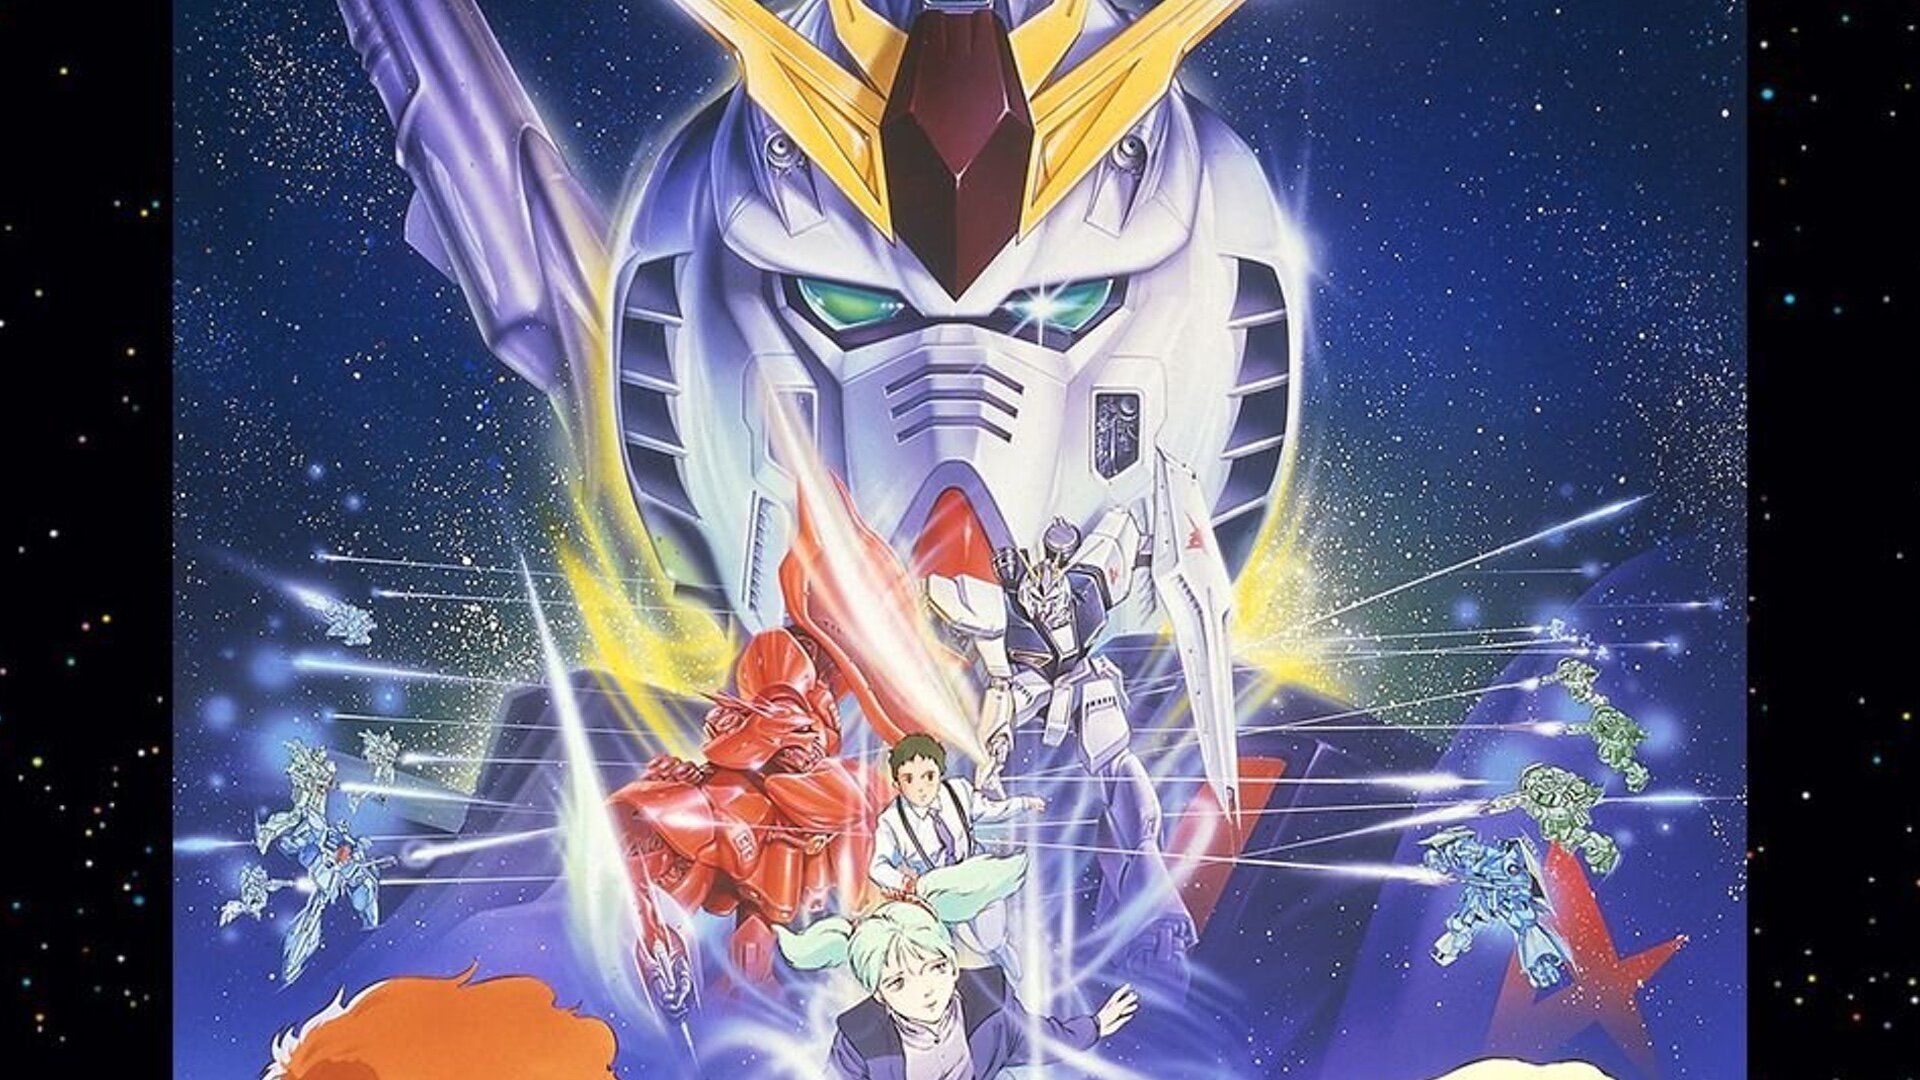 Gundamas: kur nauji gerbėjai turėtų pradėti nuo klasikinės „Mecha“ franšizės